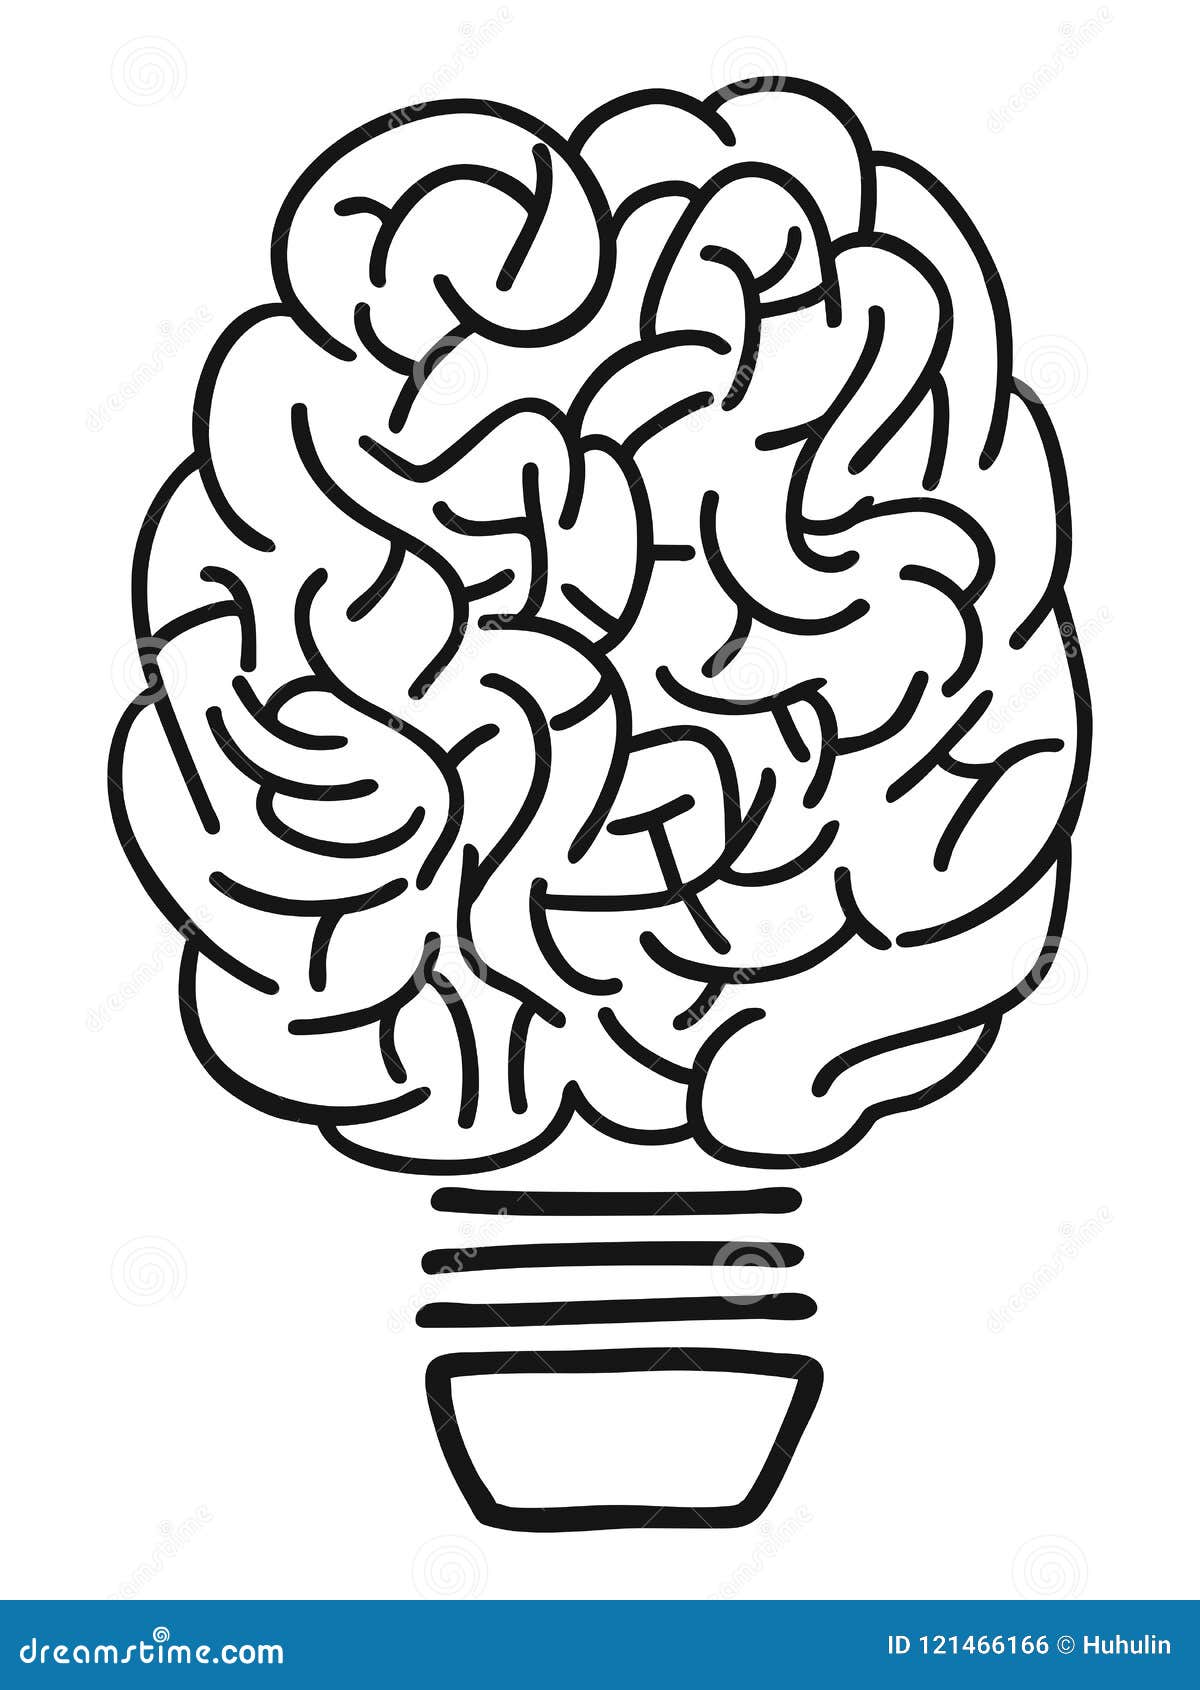 Doodle Brain Lightbulb Outline Stock Vector - Illustration of ...